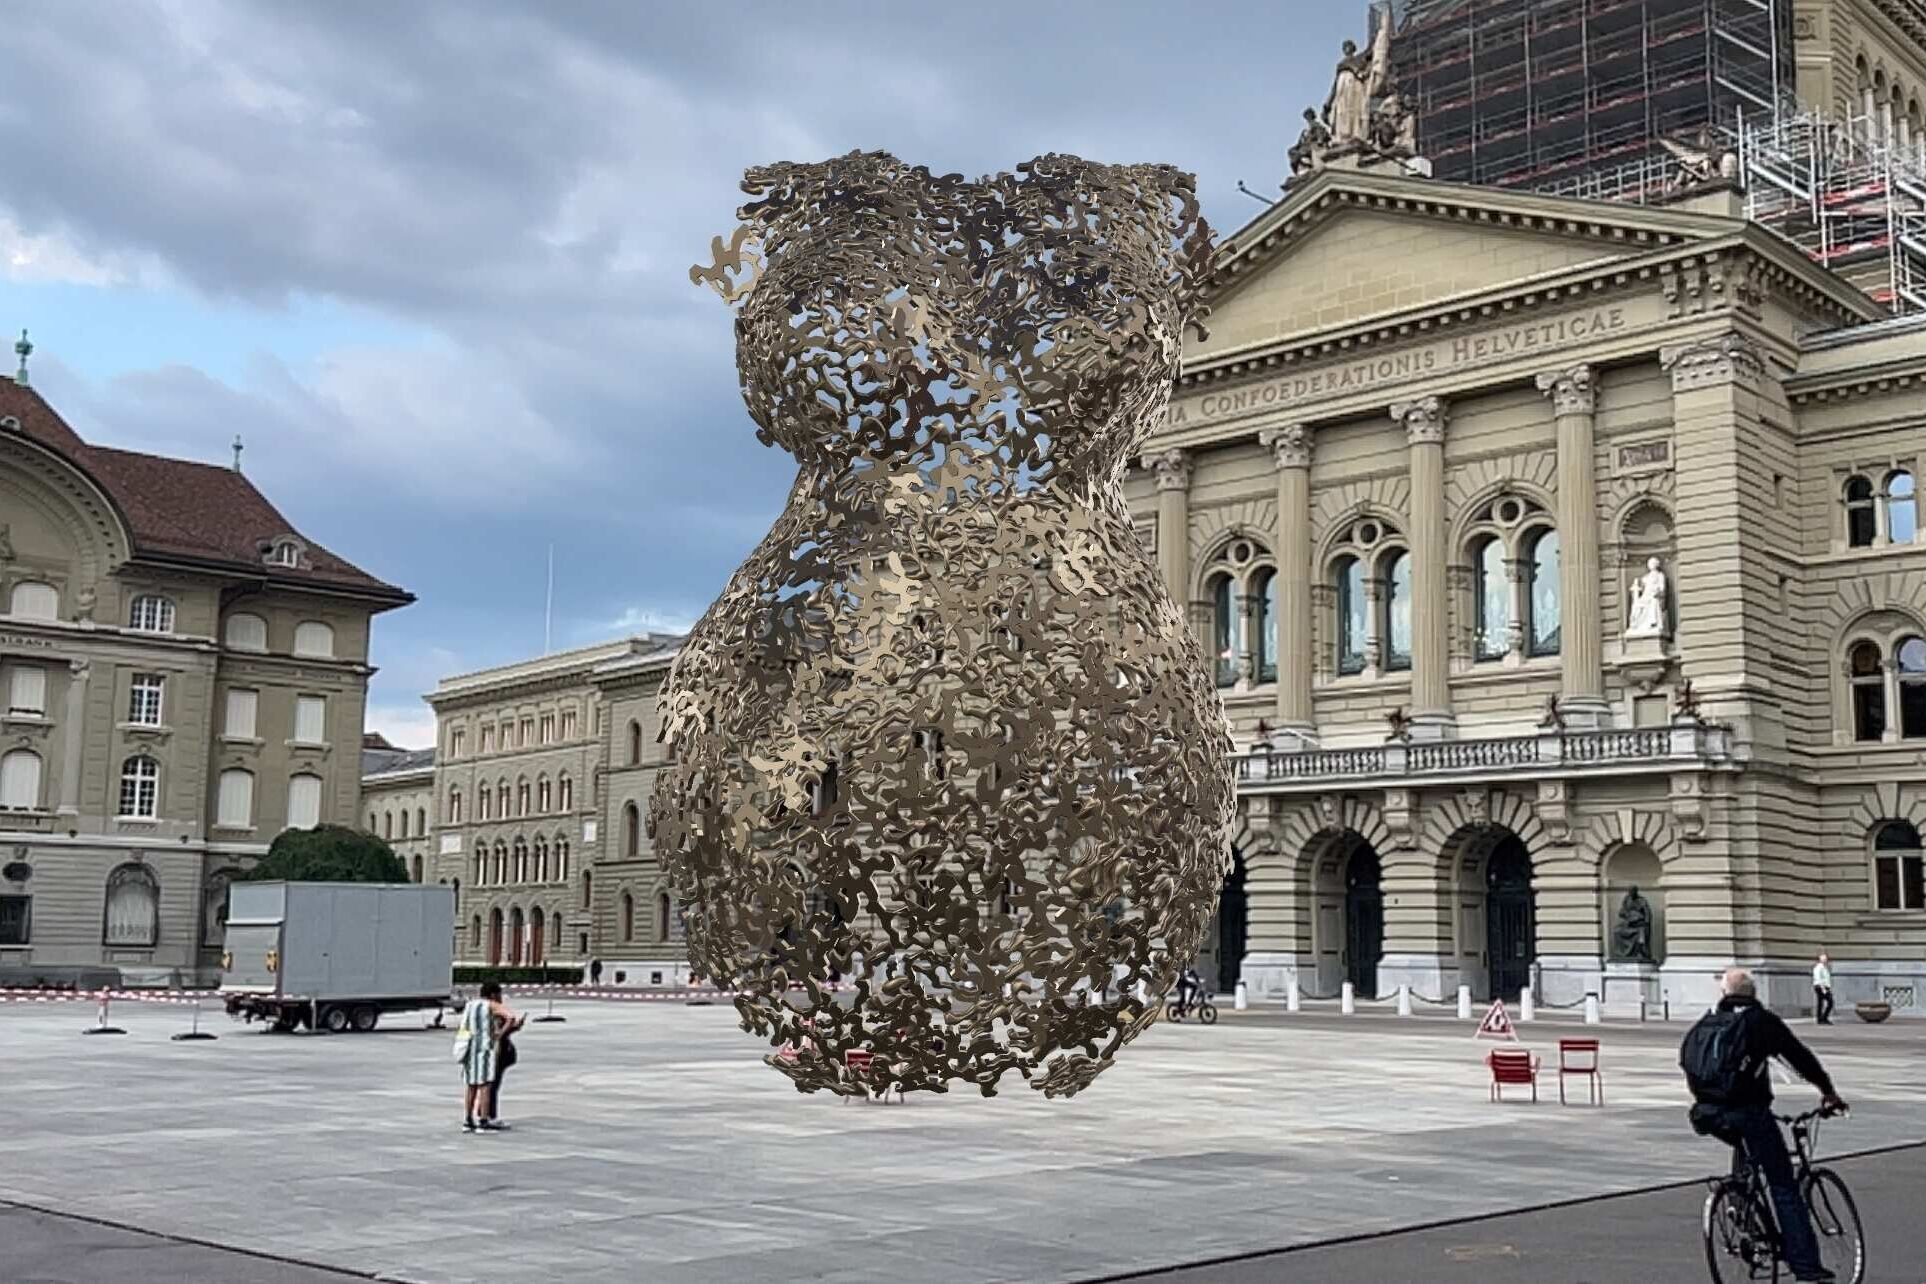 الواقع المعزز: منحوتة للفنانة أندريا ستال بتقنية الواقع المعزز أمام القصر الفيدرالي في برن